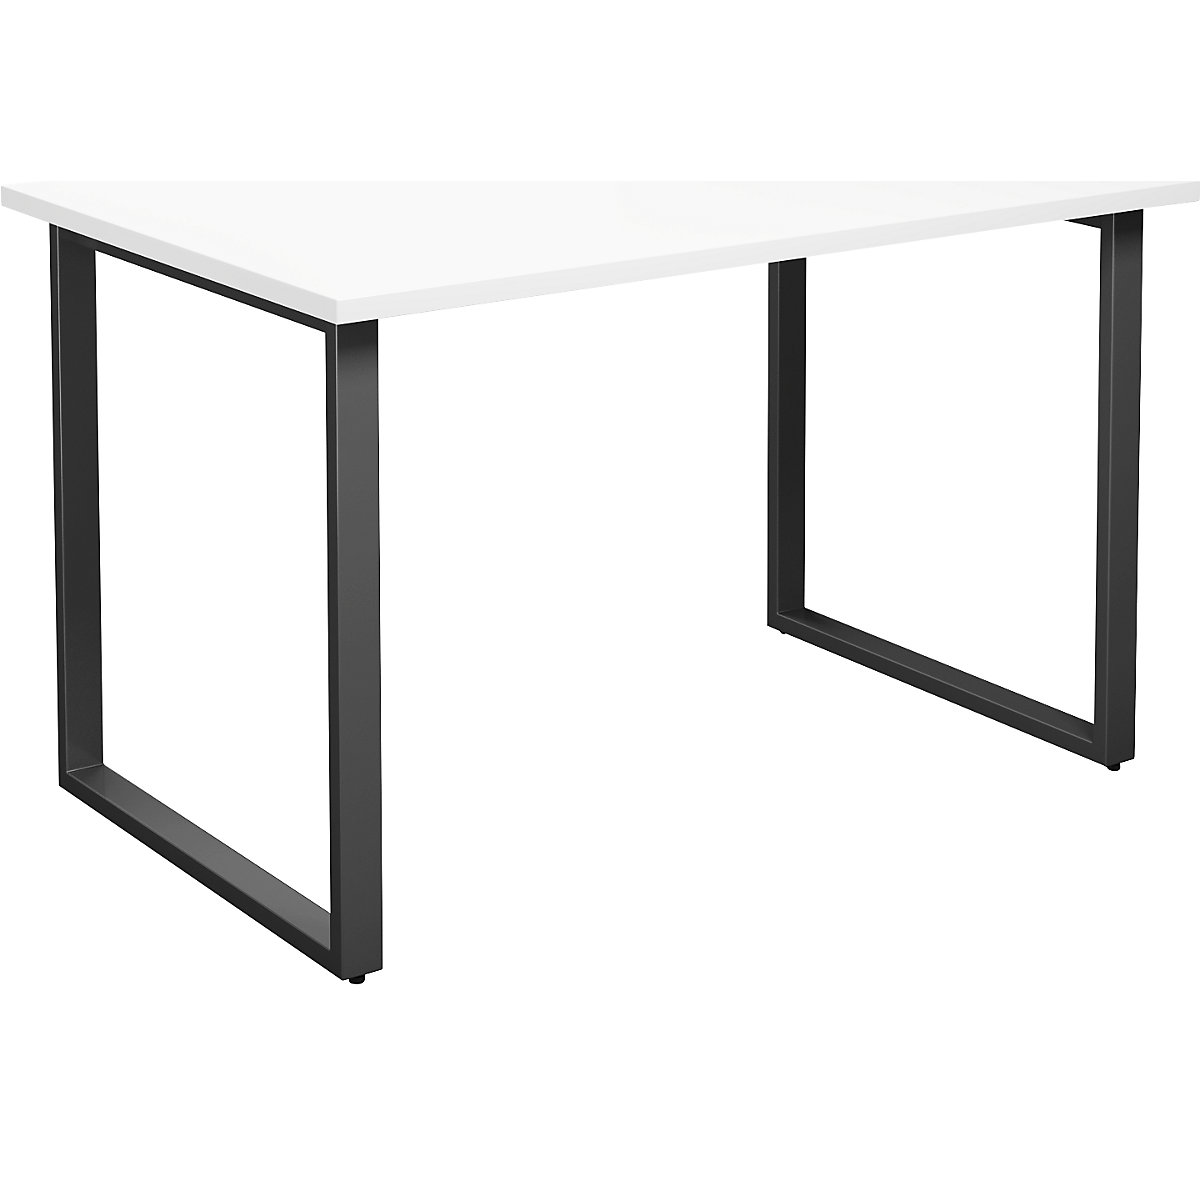 DUO-O multi-purpose desk, straight tabletop, WxD 1200 x 800 mm, white, black-6